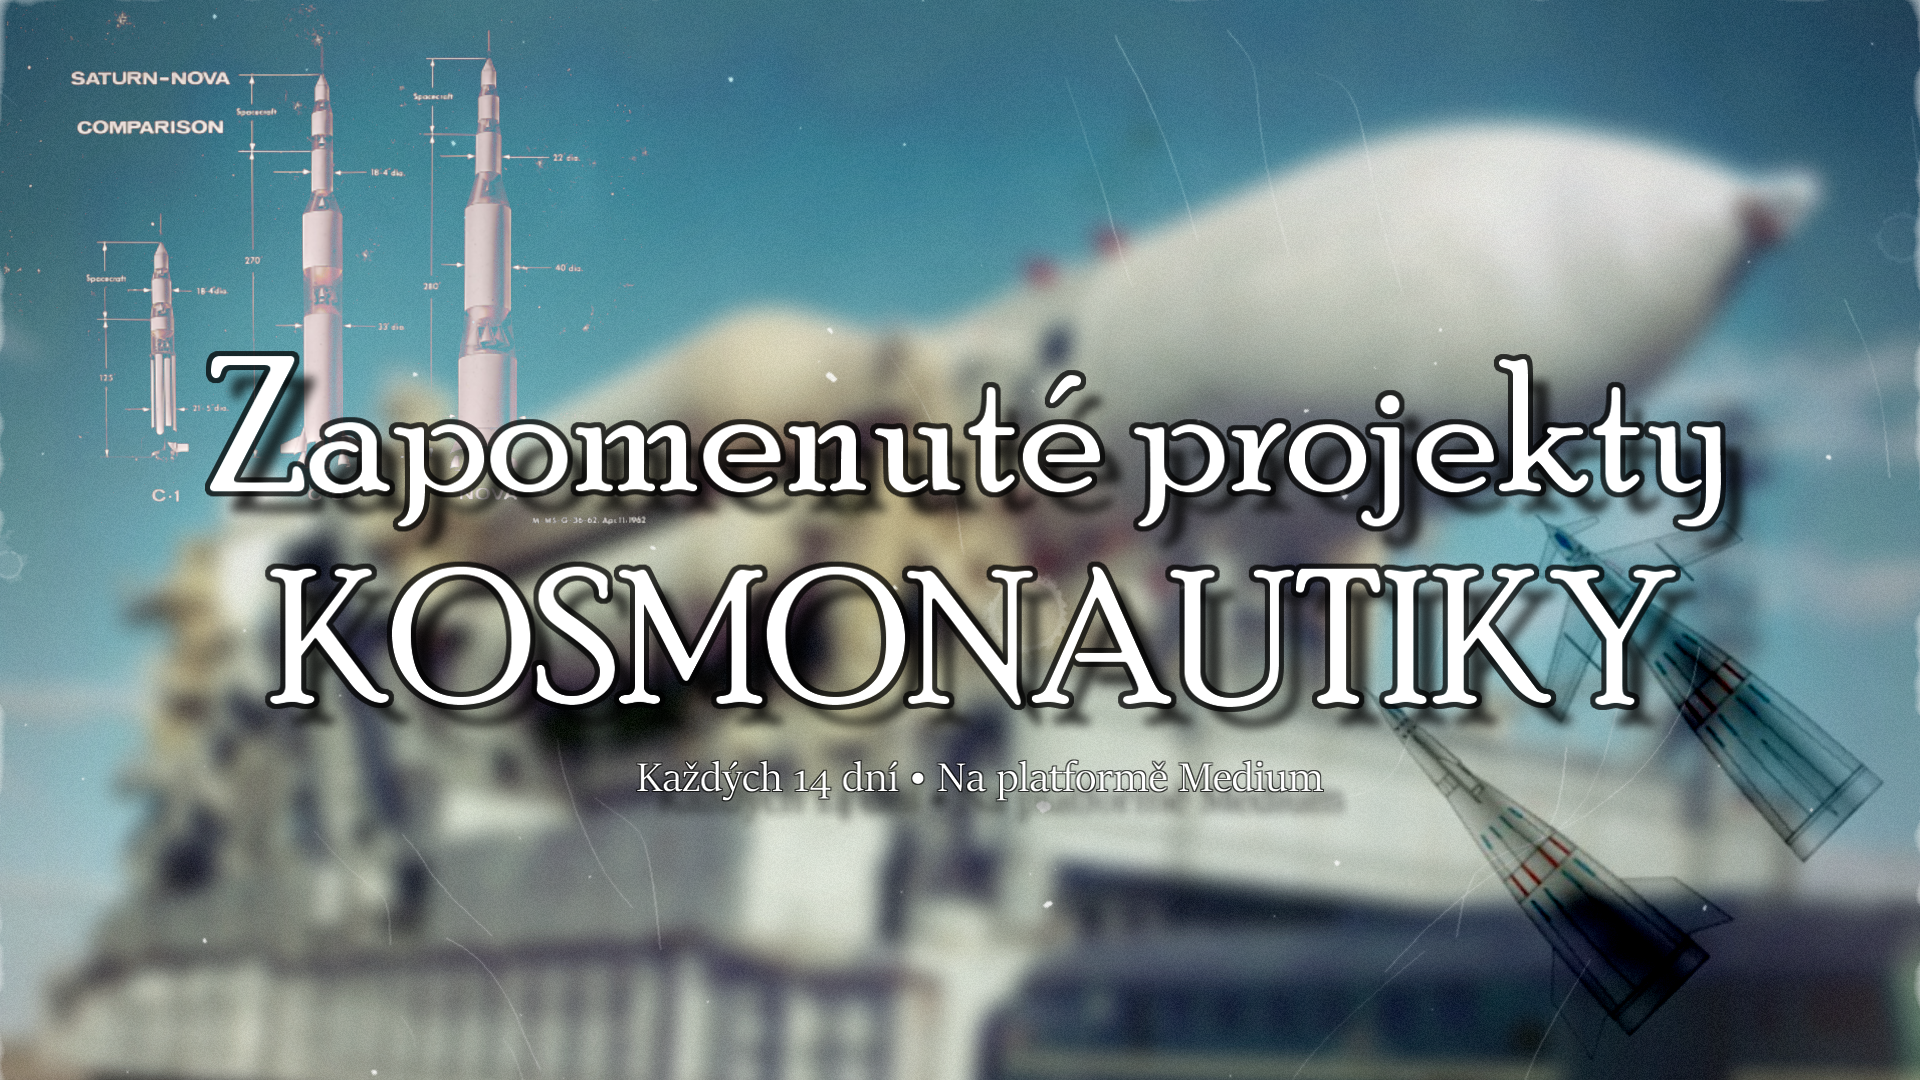 Zapomenuté projekty kosmonautiky 0: p?edstavení seriálu